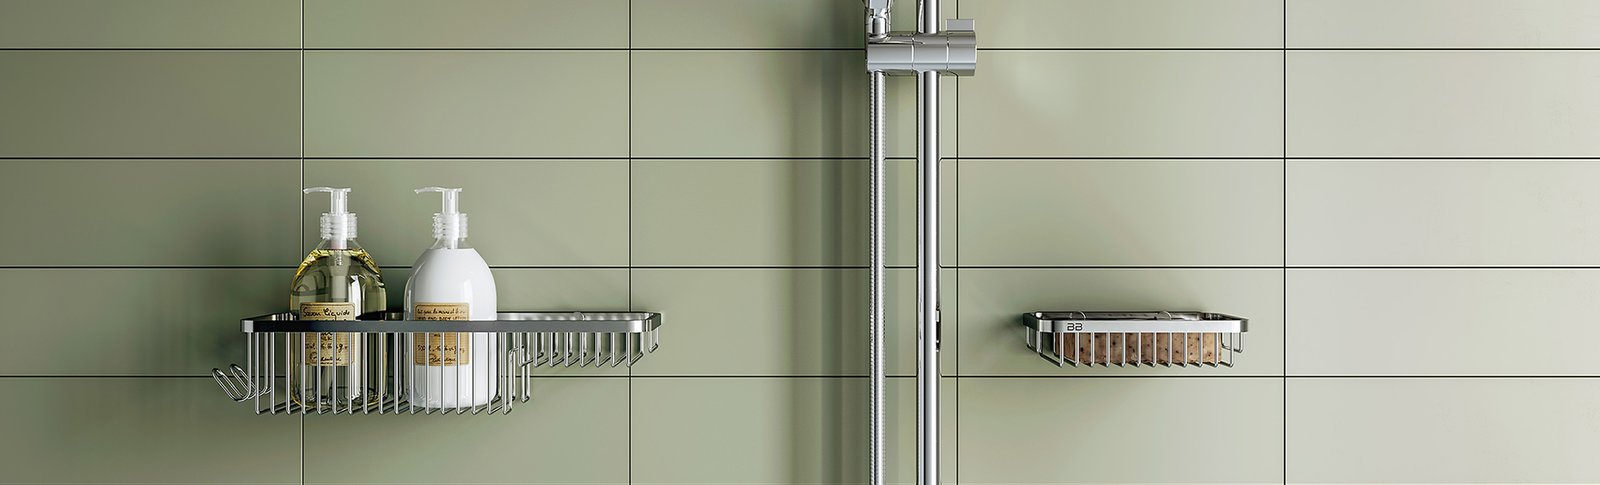 9100 Series bathroom accessories shower caddies stainless steel